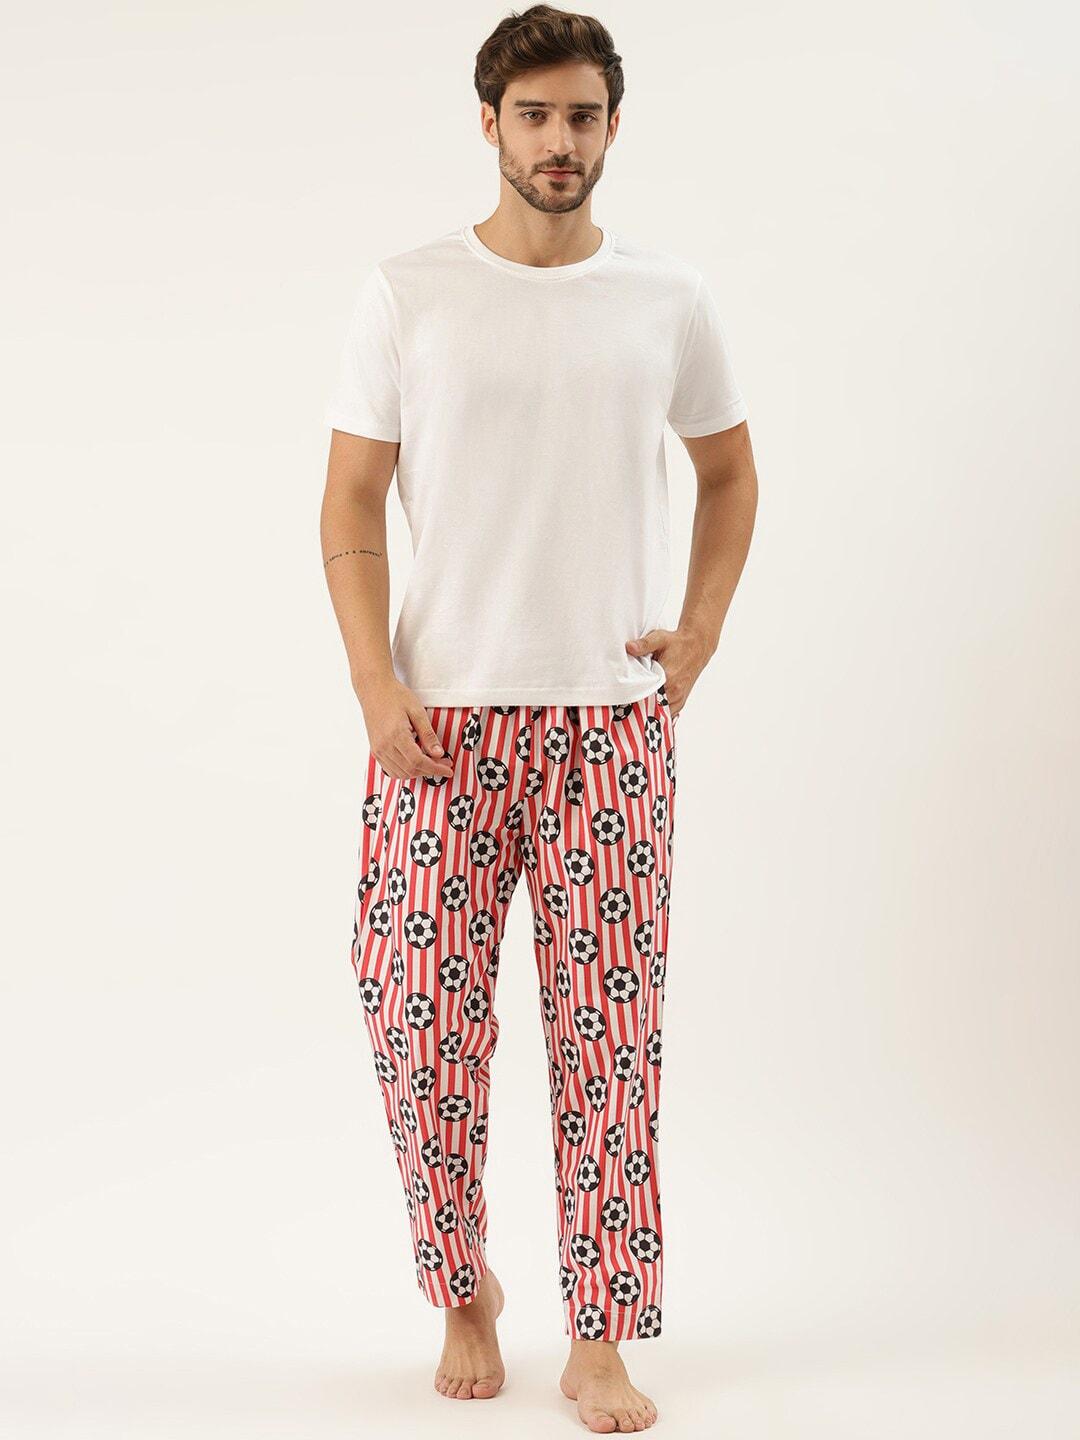 rapra the label men white & red printed cotton lounge pants